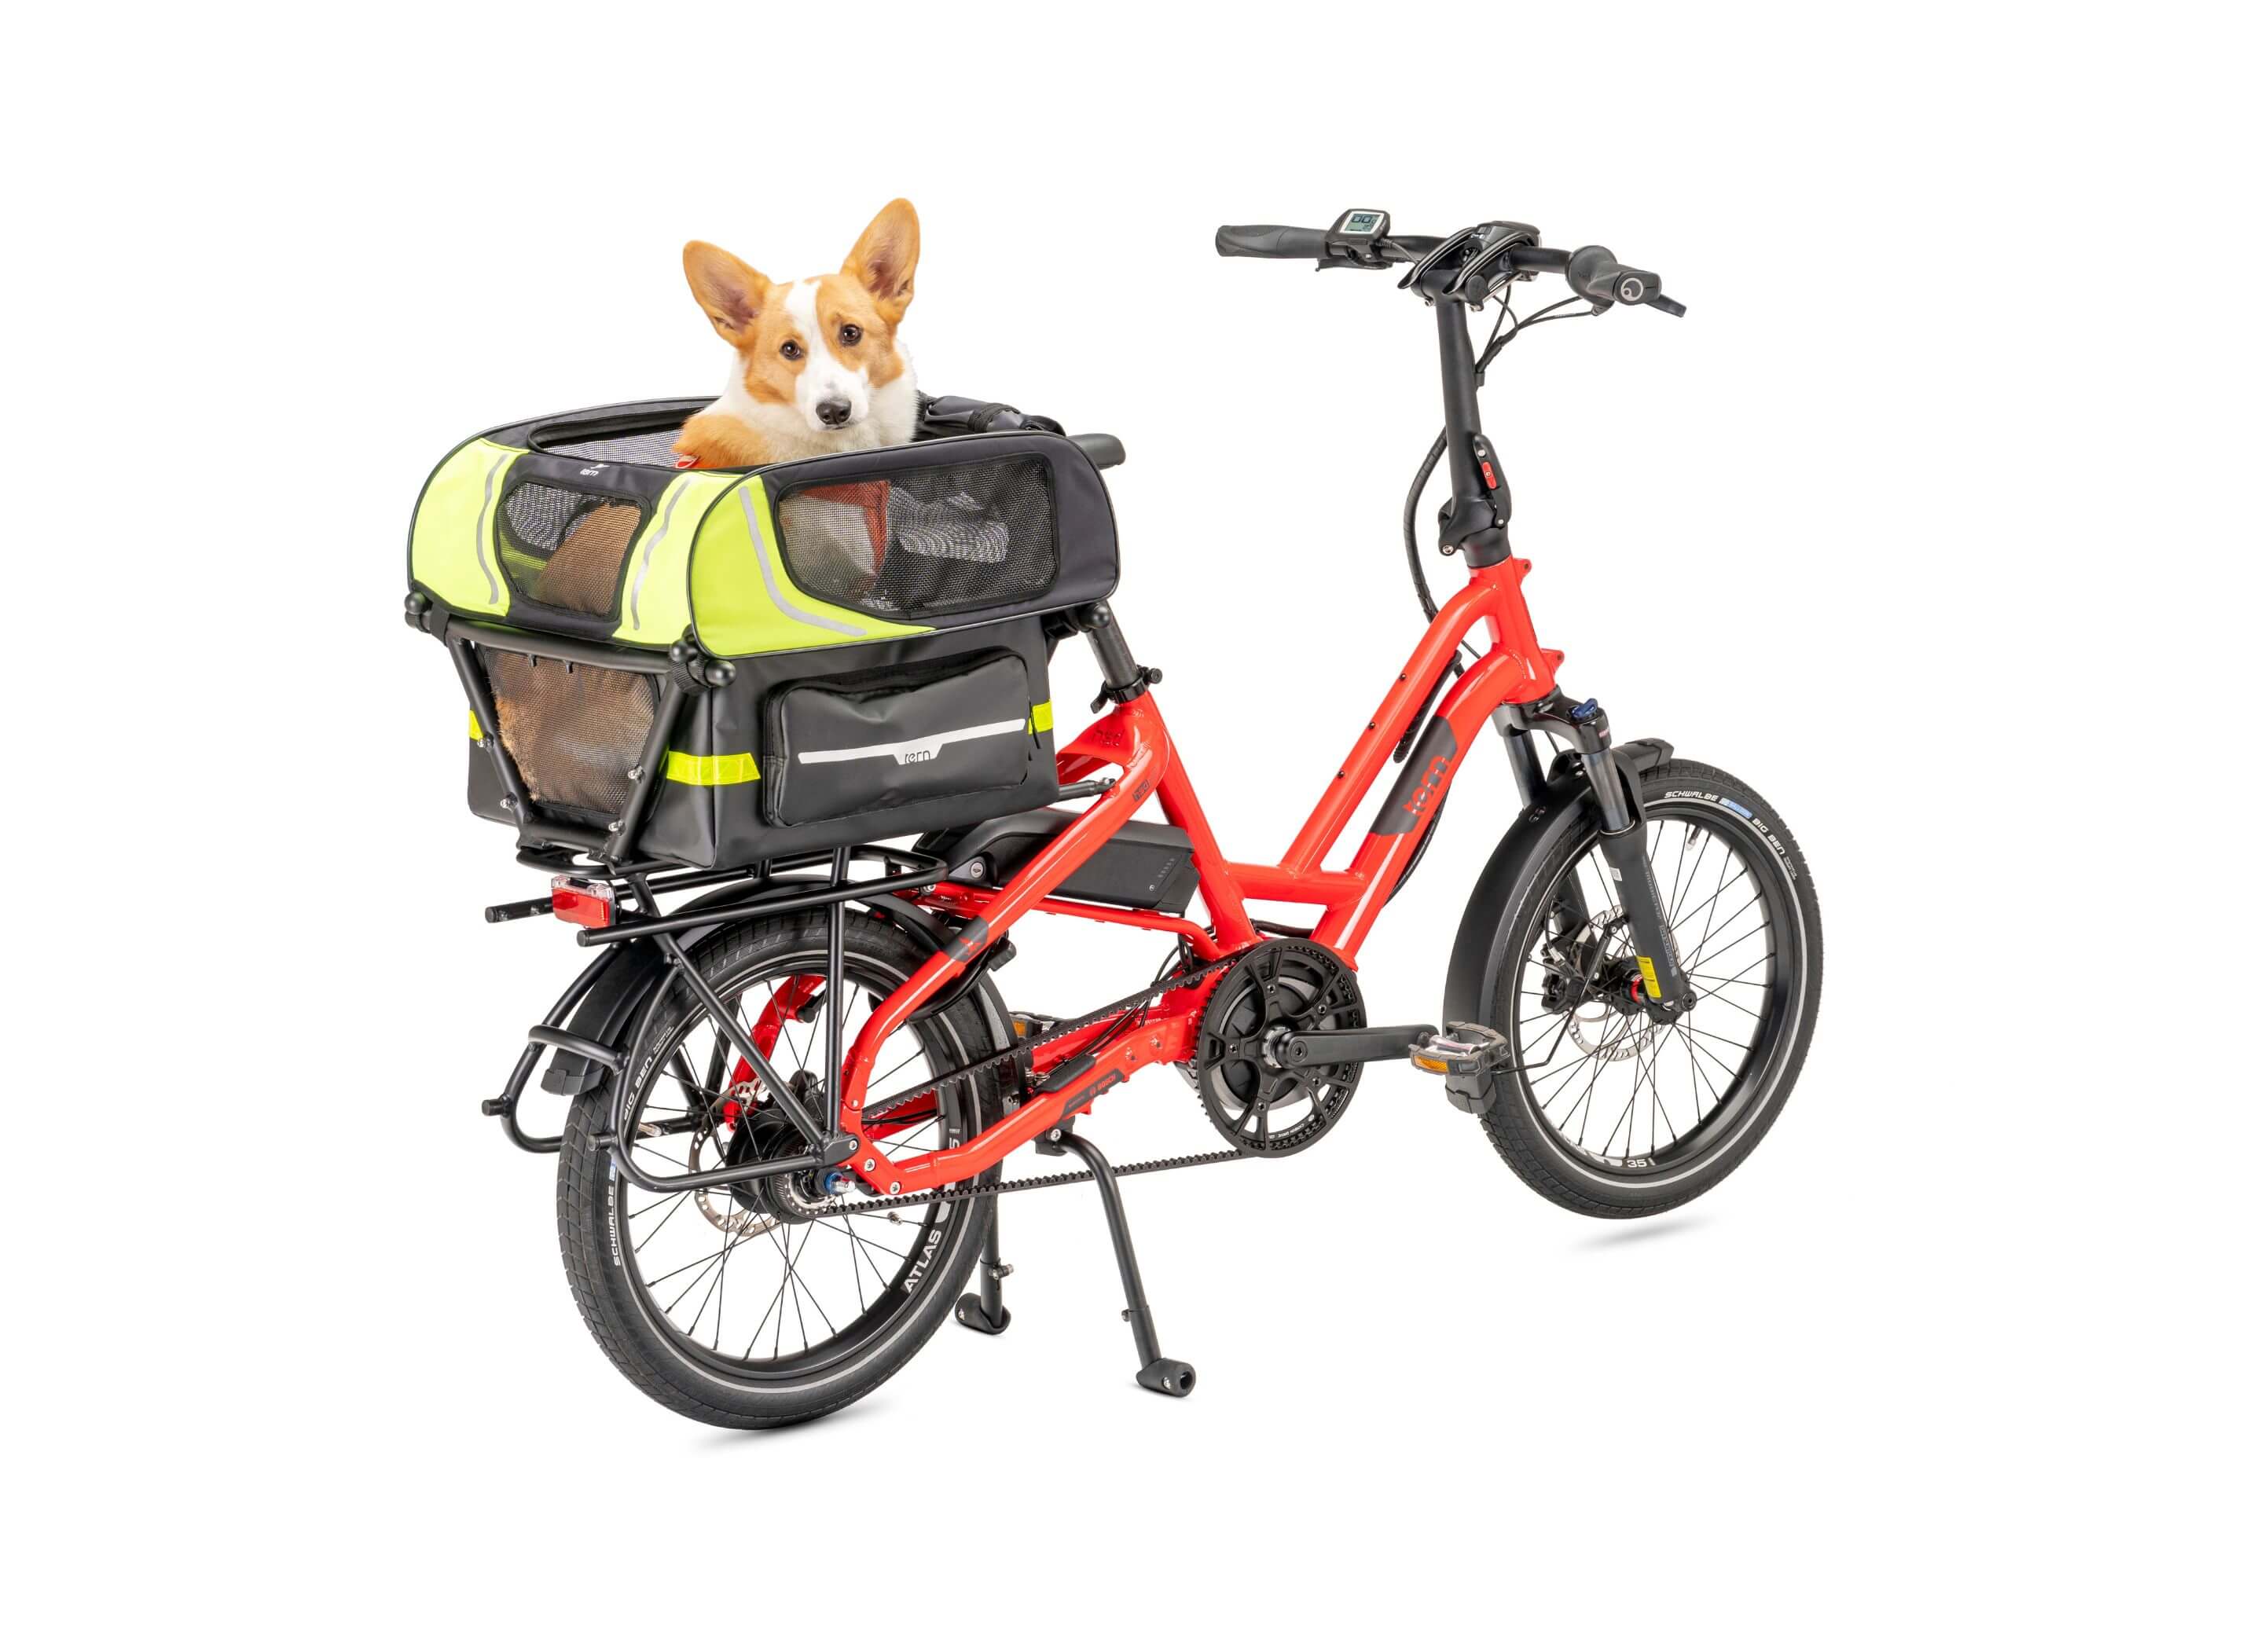 Tern Dog Roof Mini Bike Carrier